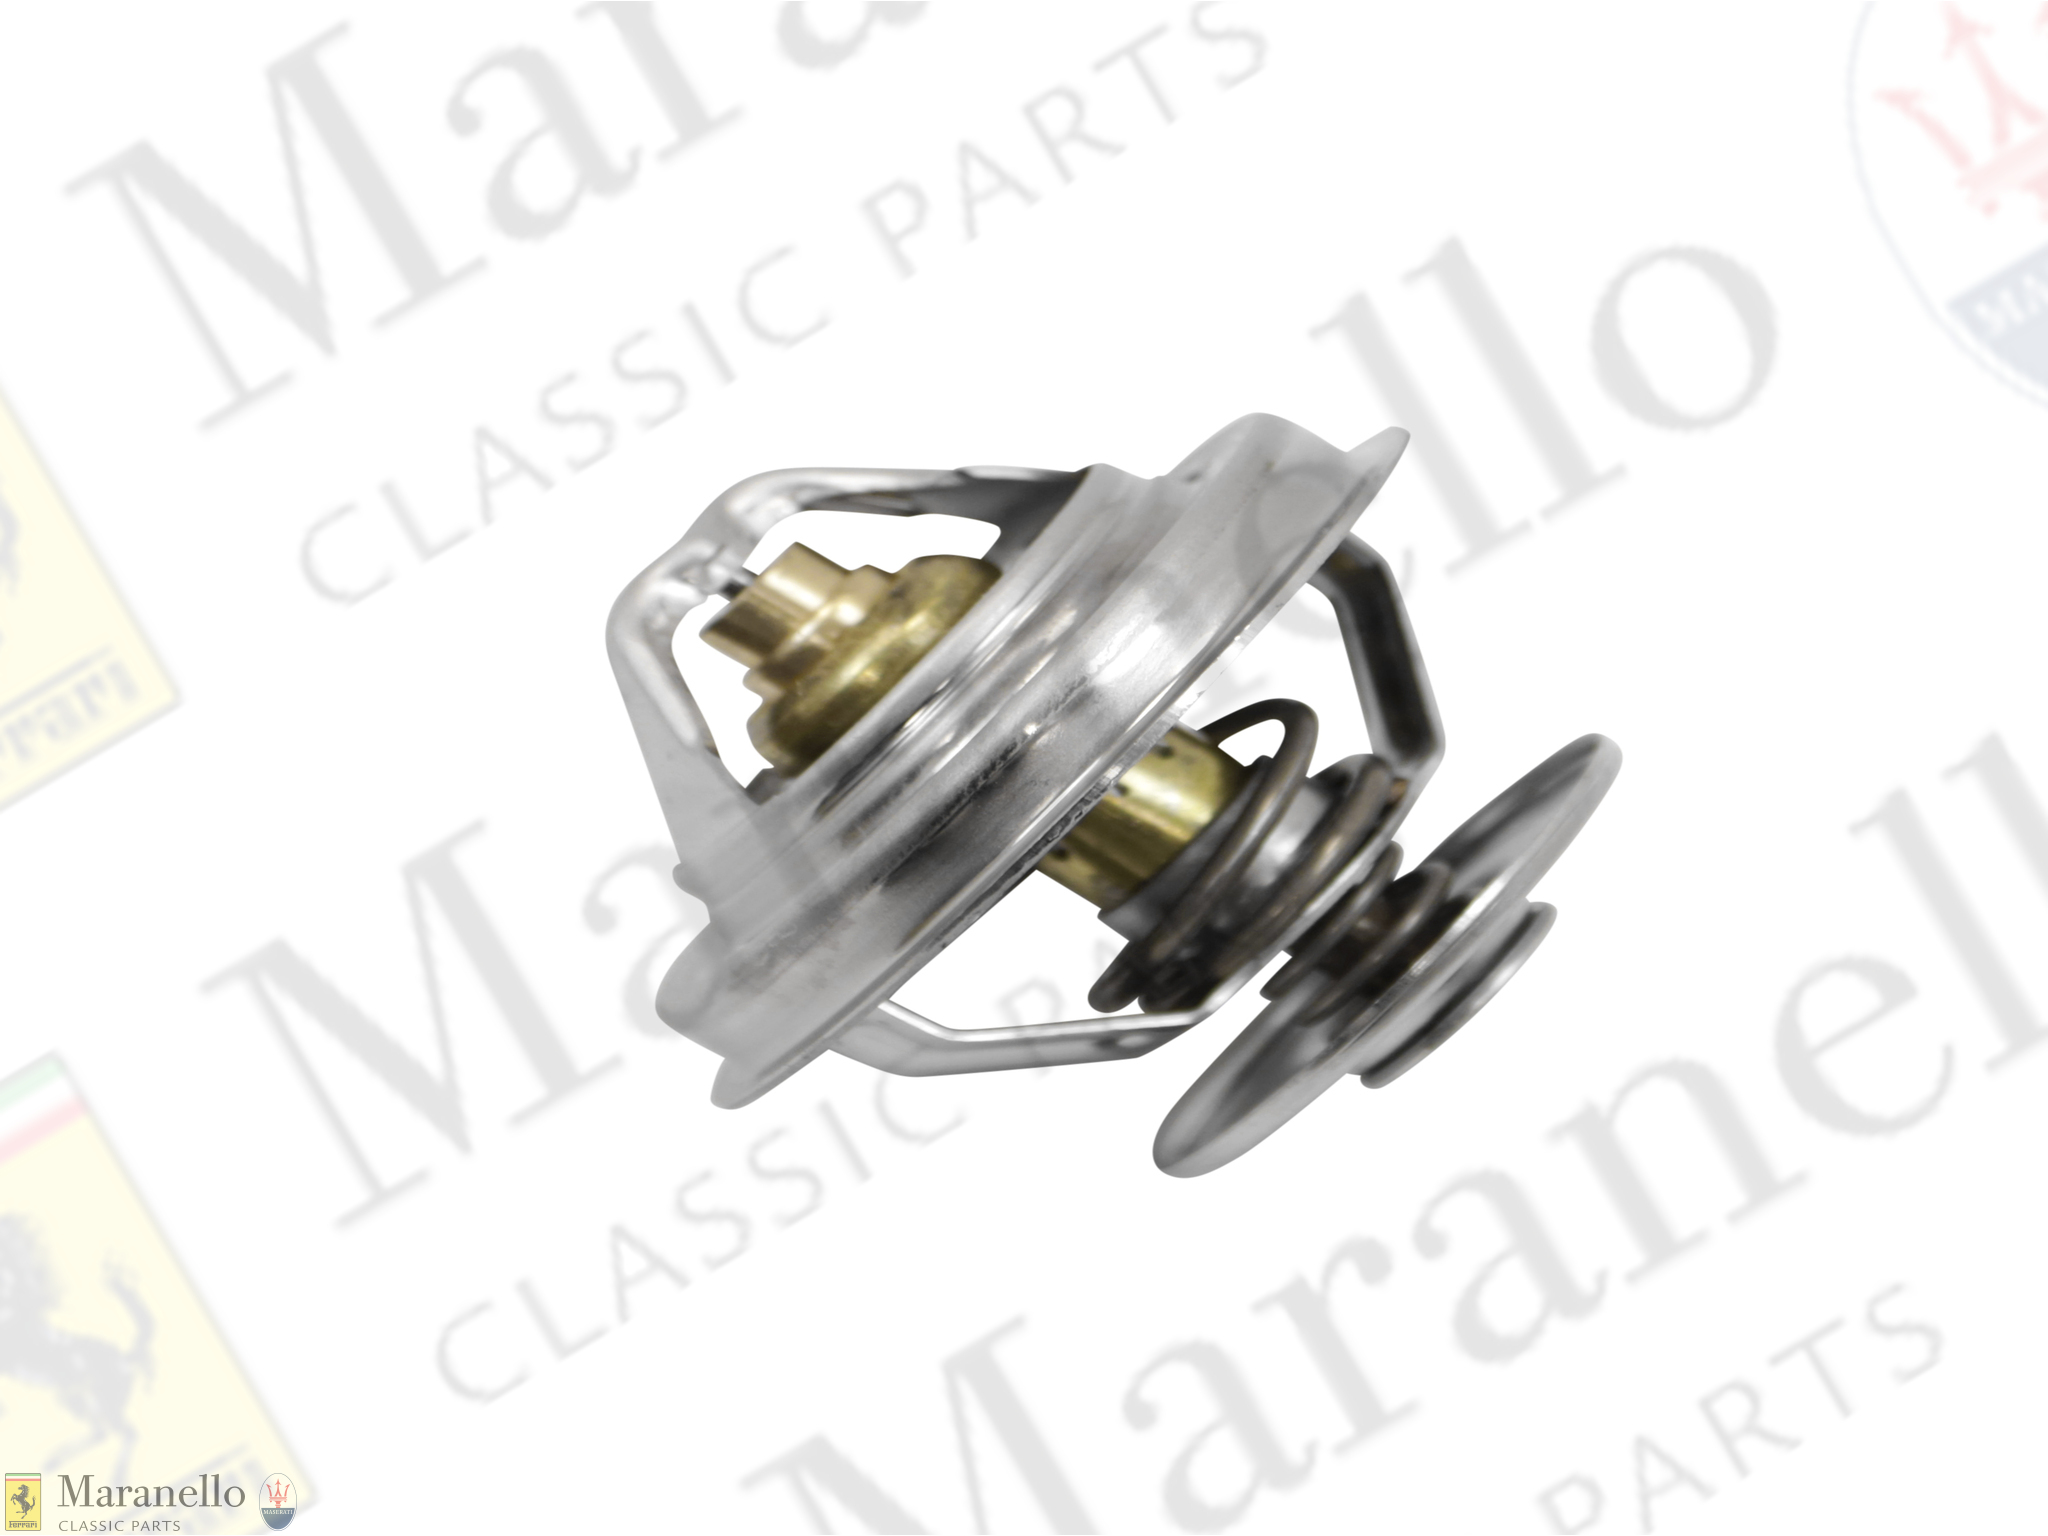 Ferrari part 950840 - Water Thermostat | Maranello Classic Parts